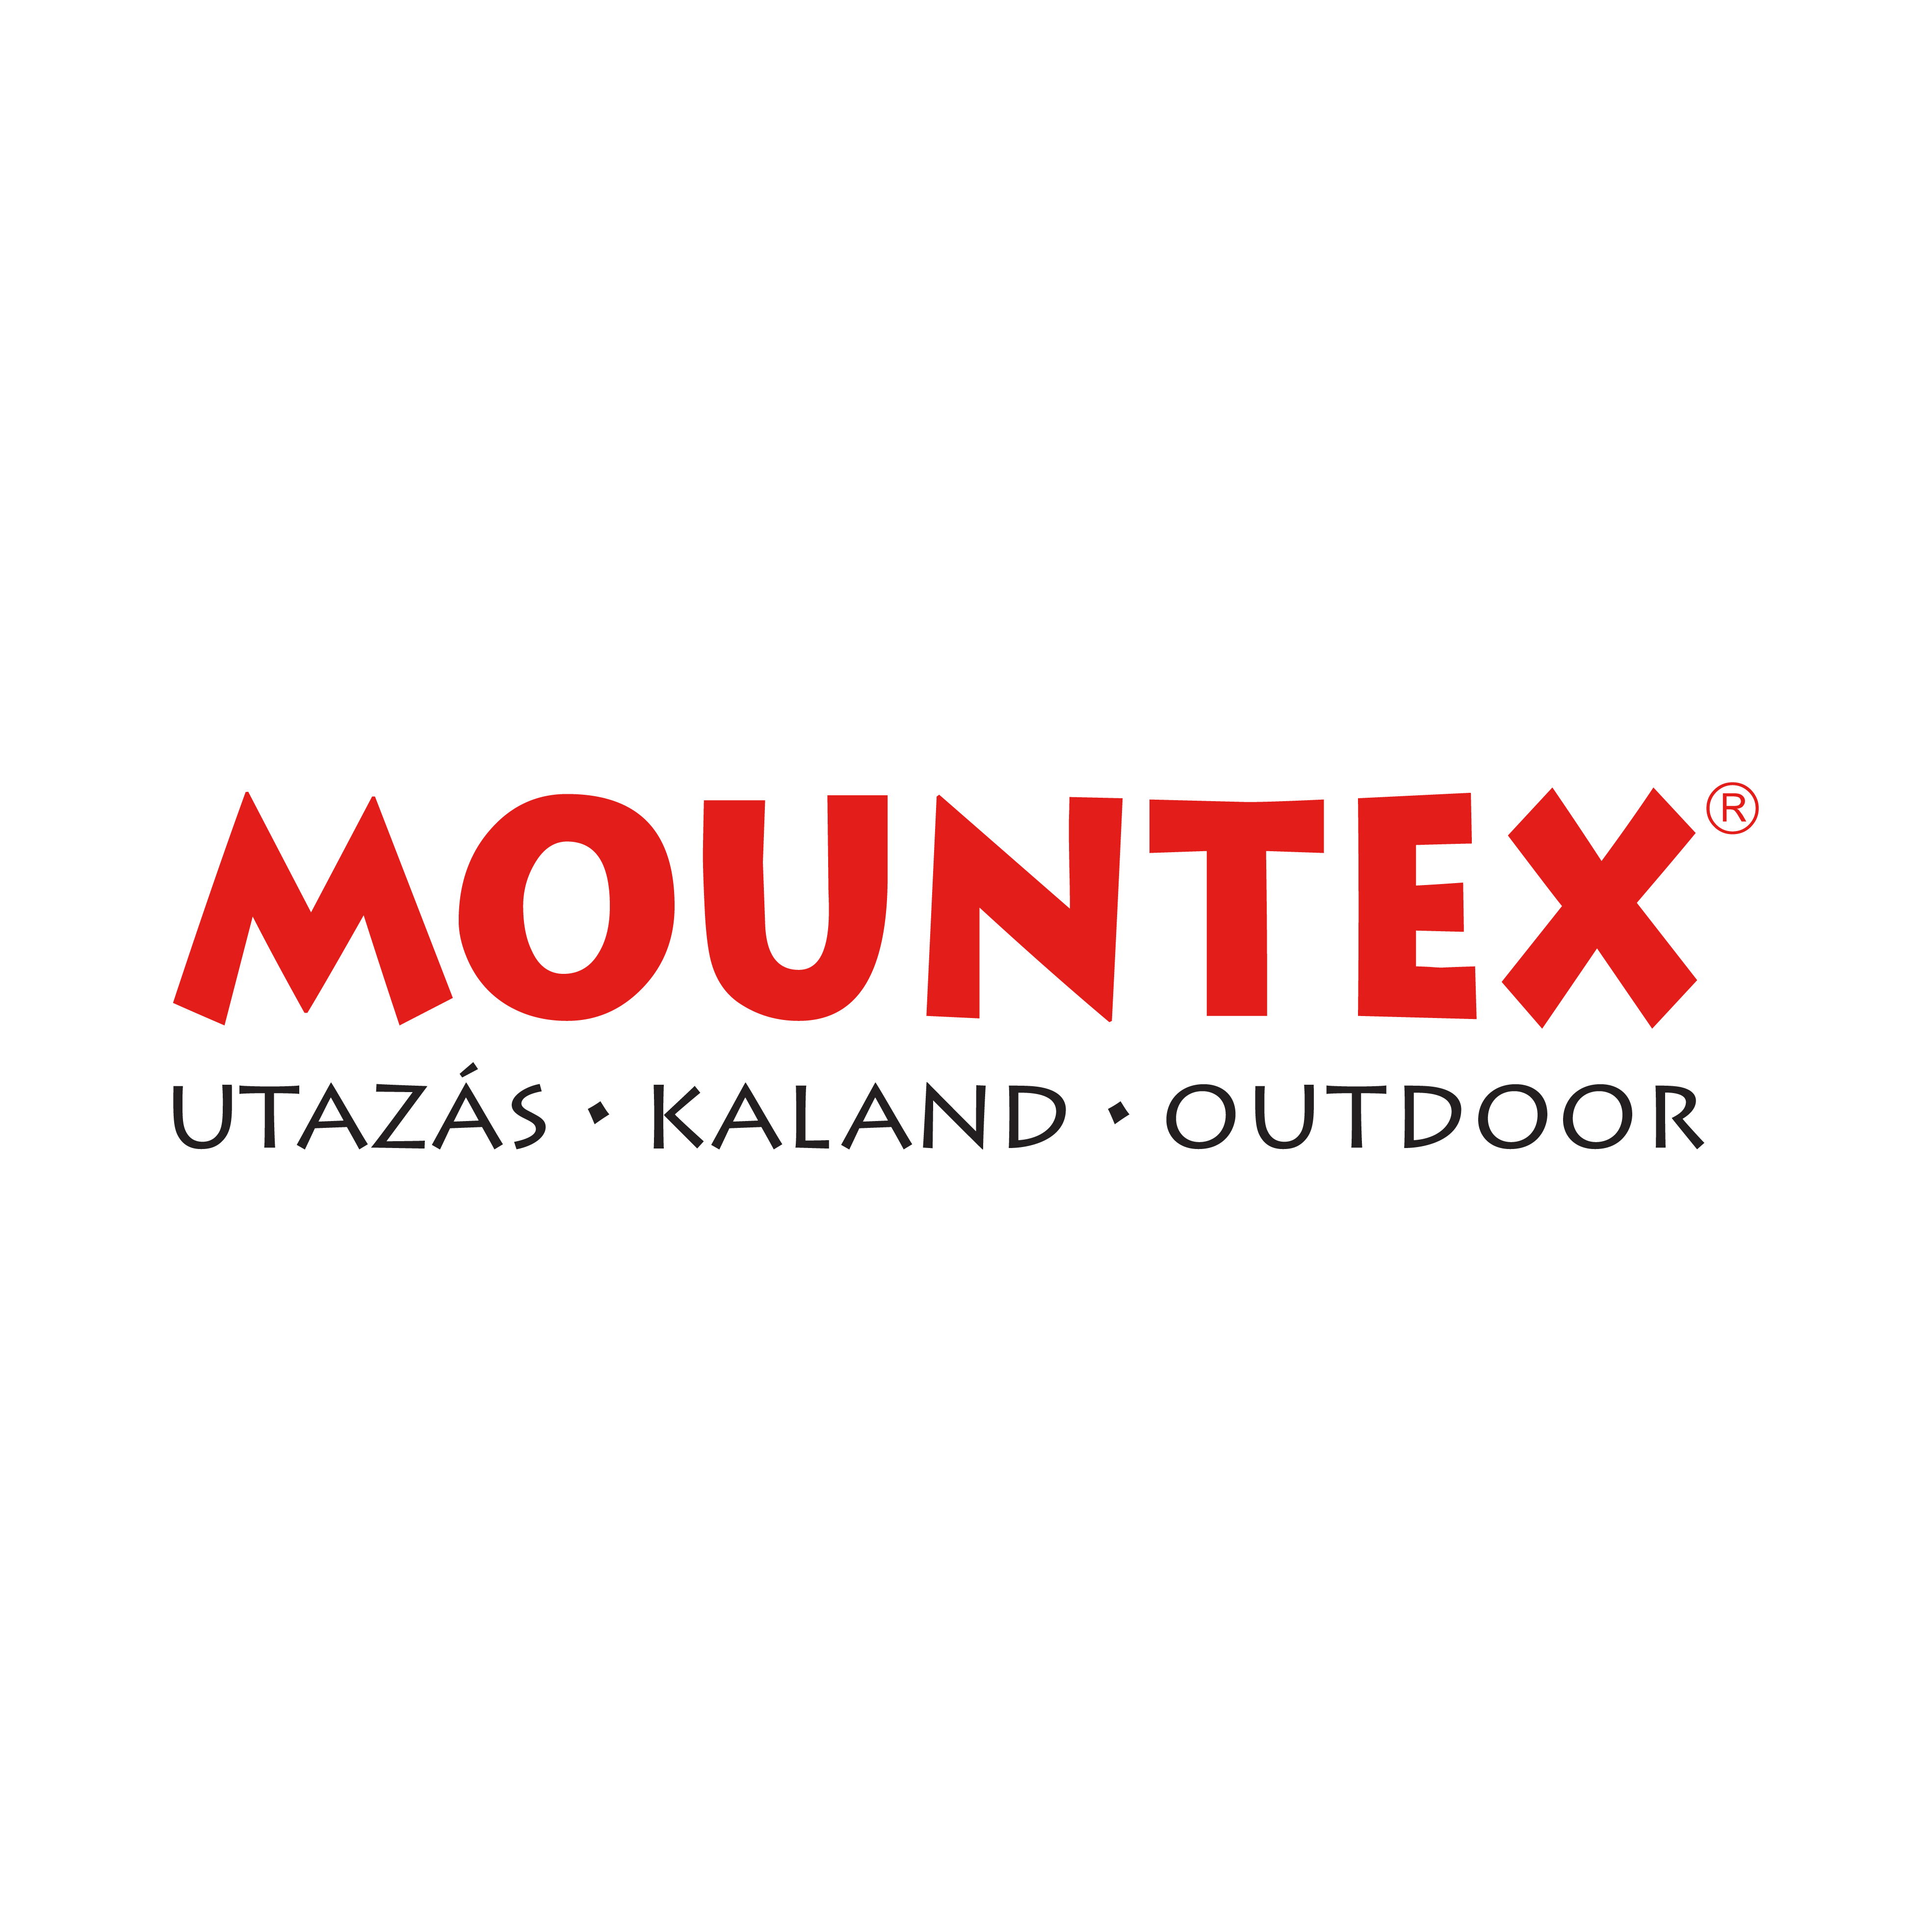 Mountex